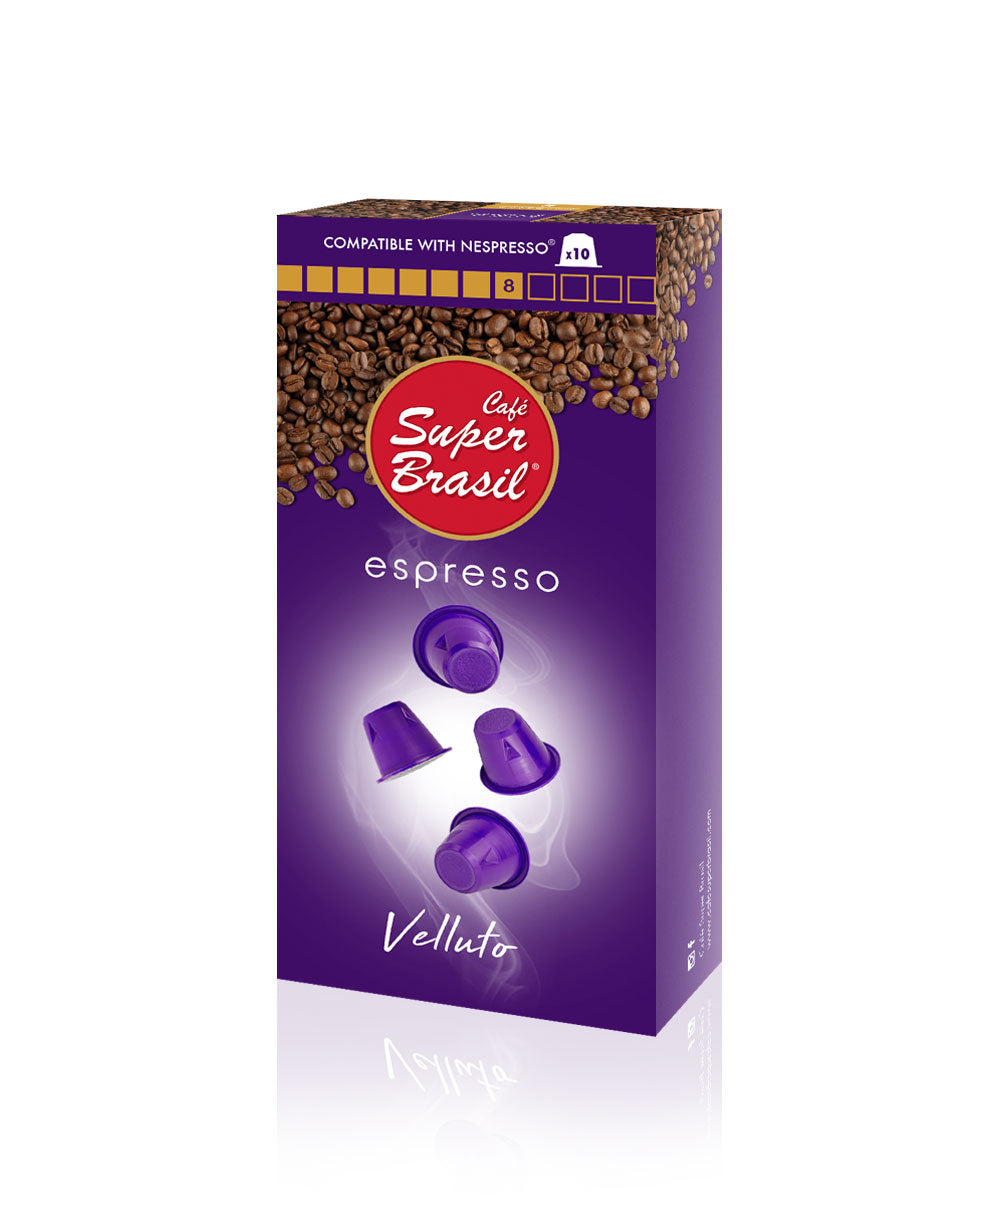 Café Super Brasil VELLUTO Nespresso Compatible Capsule